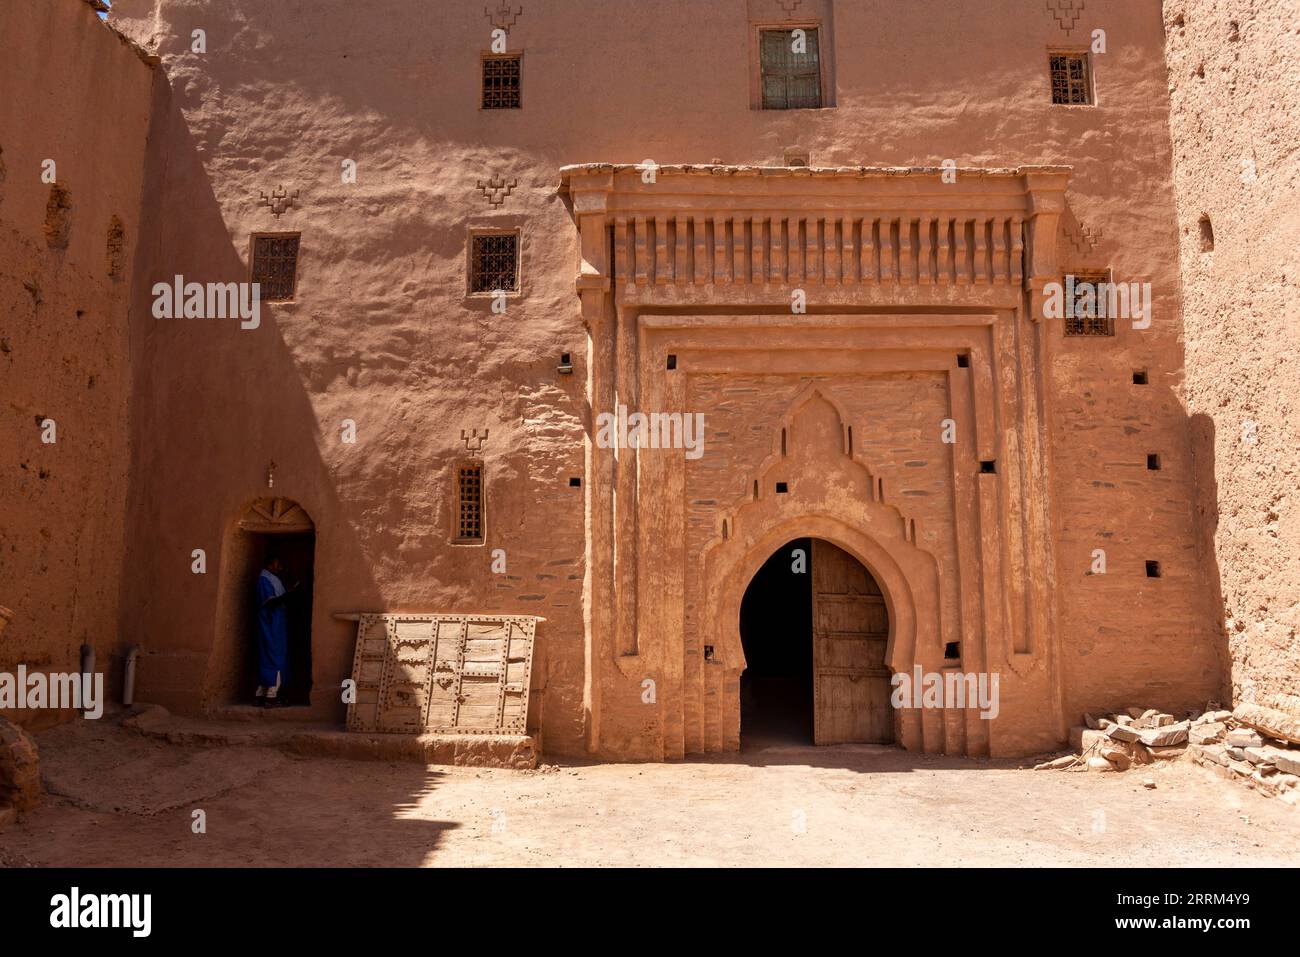 Façade d'une maison berbère typique en argile, vallée du Draa au Maroc Banque D'Images